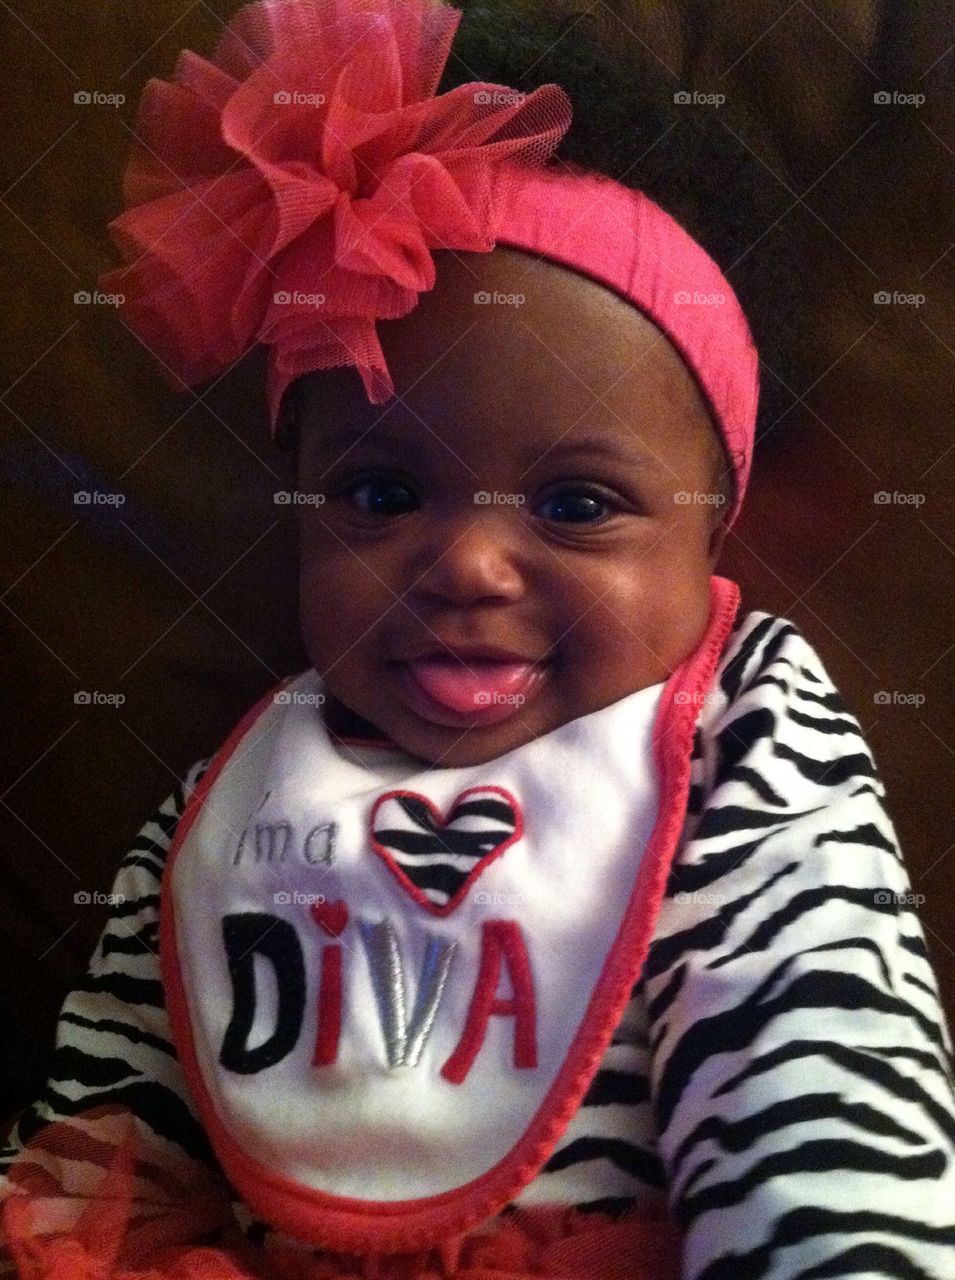 Little Diva